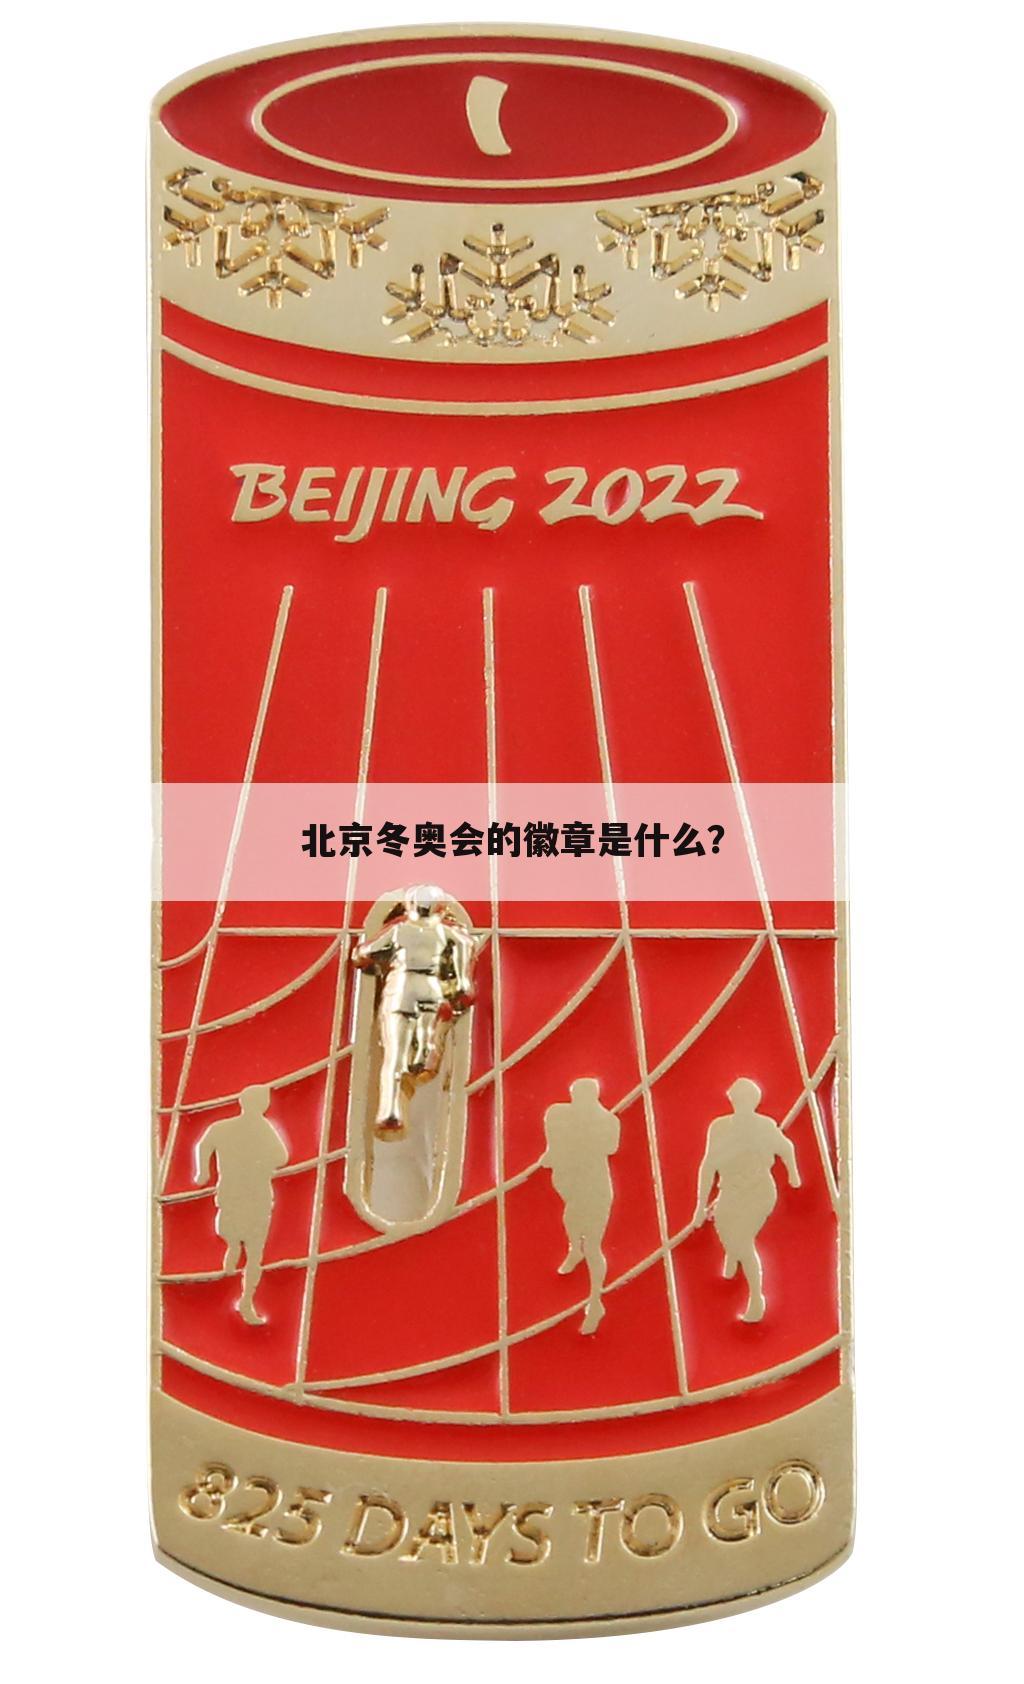 北京冬奥会的徽章是什么？